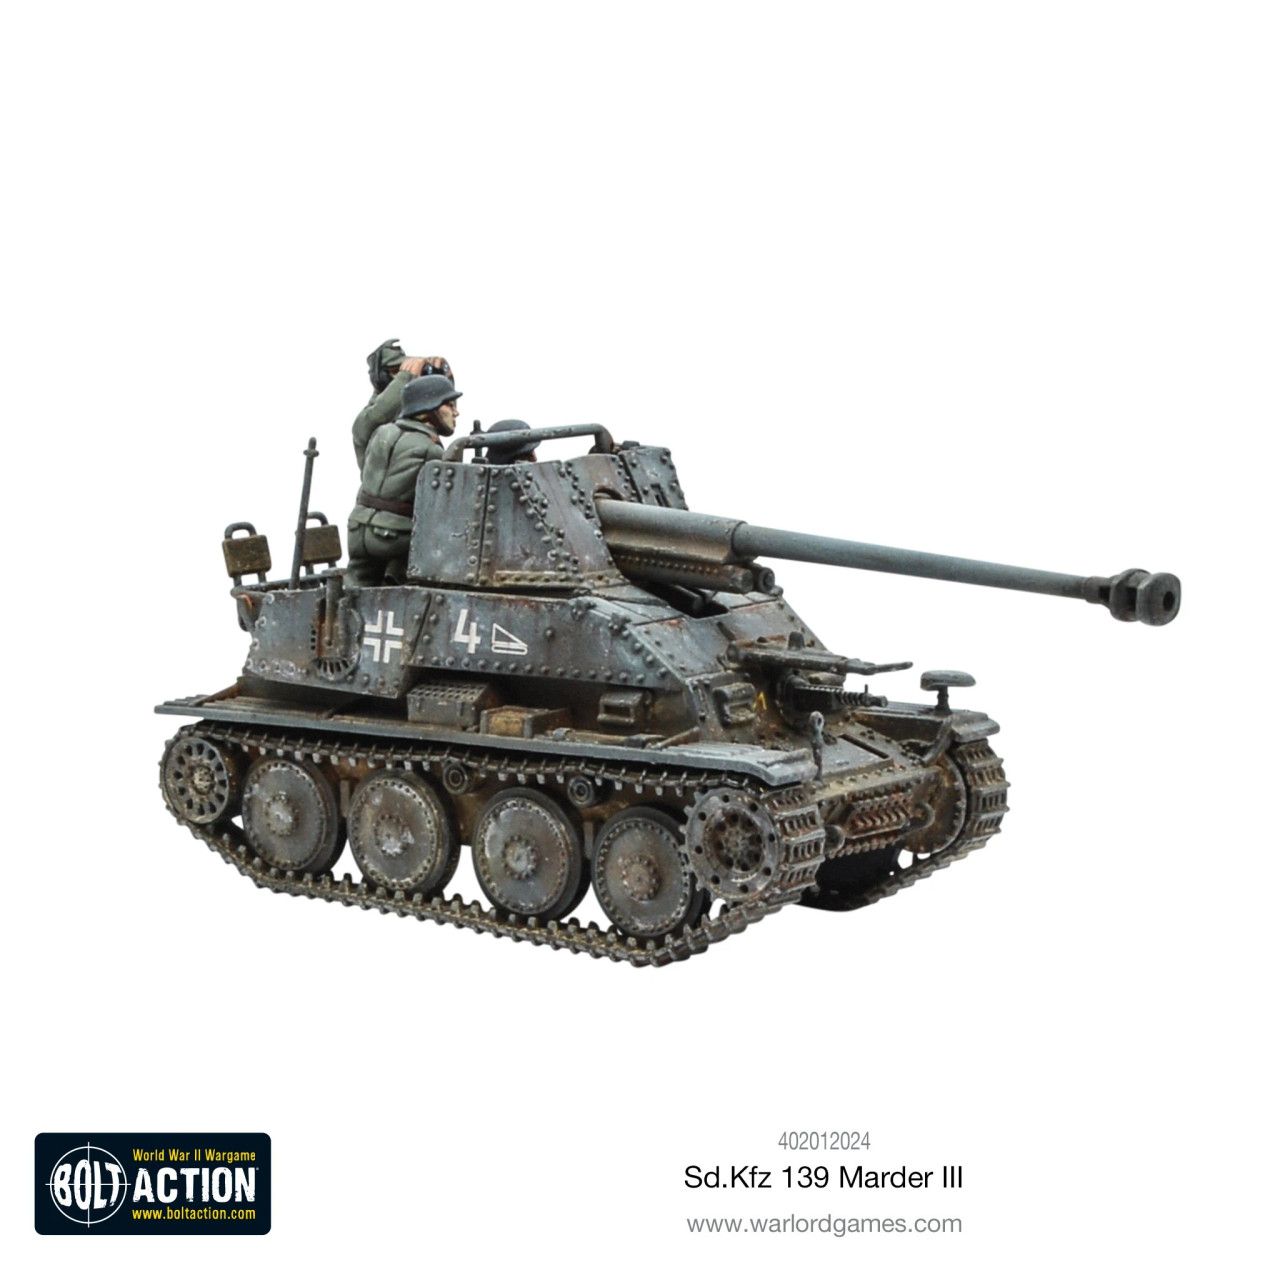 Sd.kfz 139 Marder III - 402012024